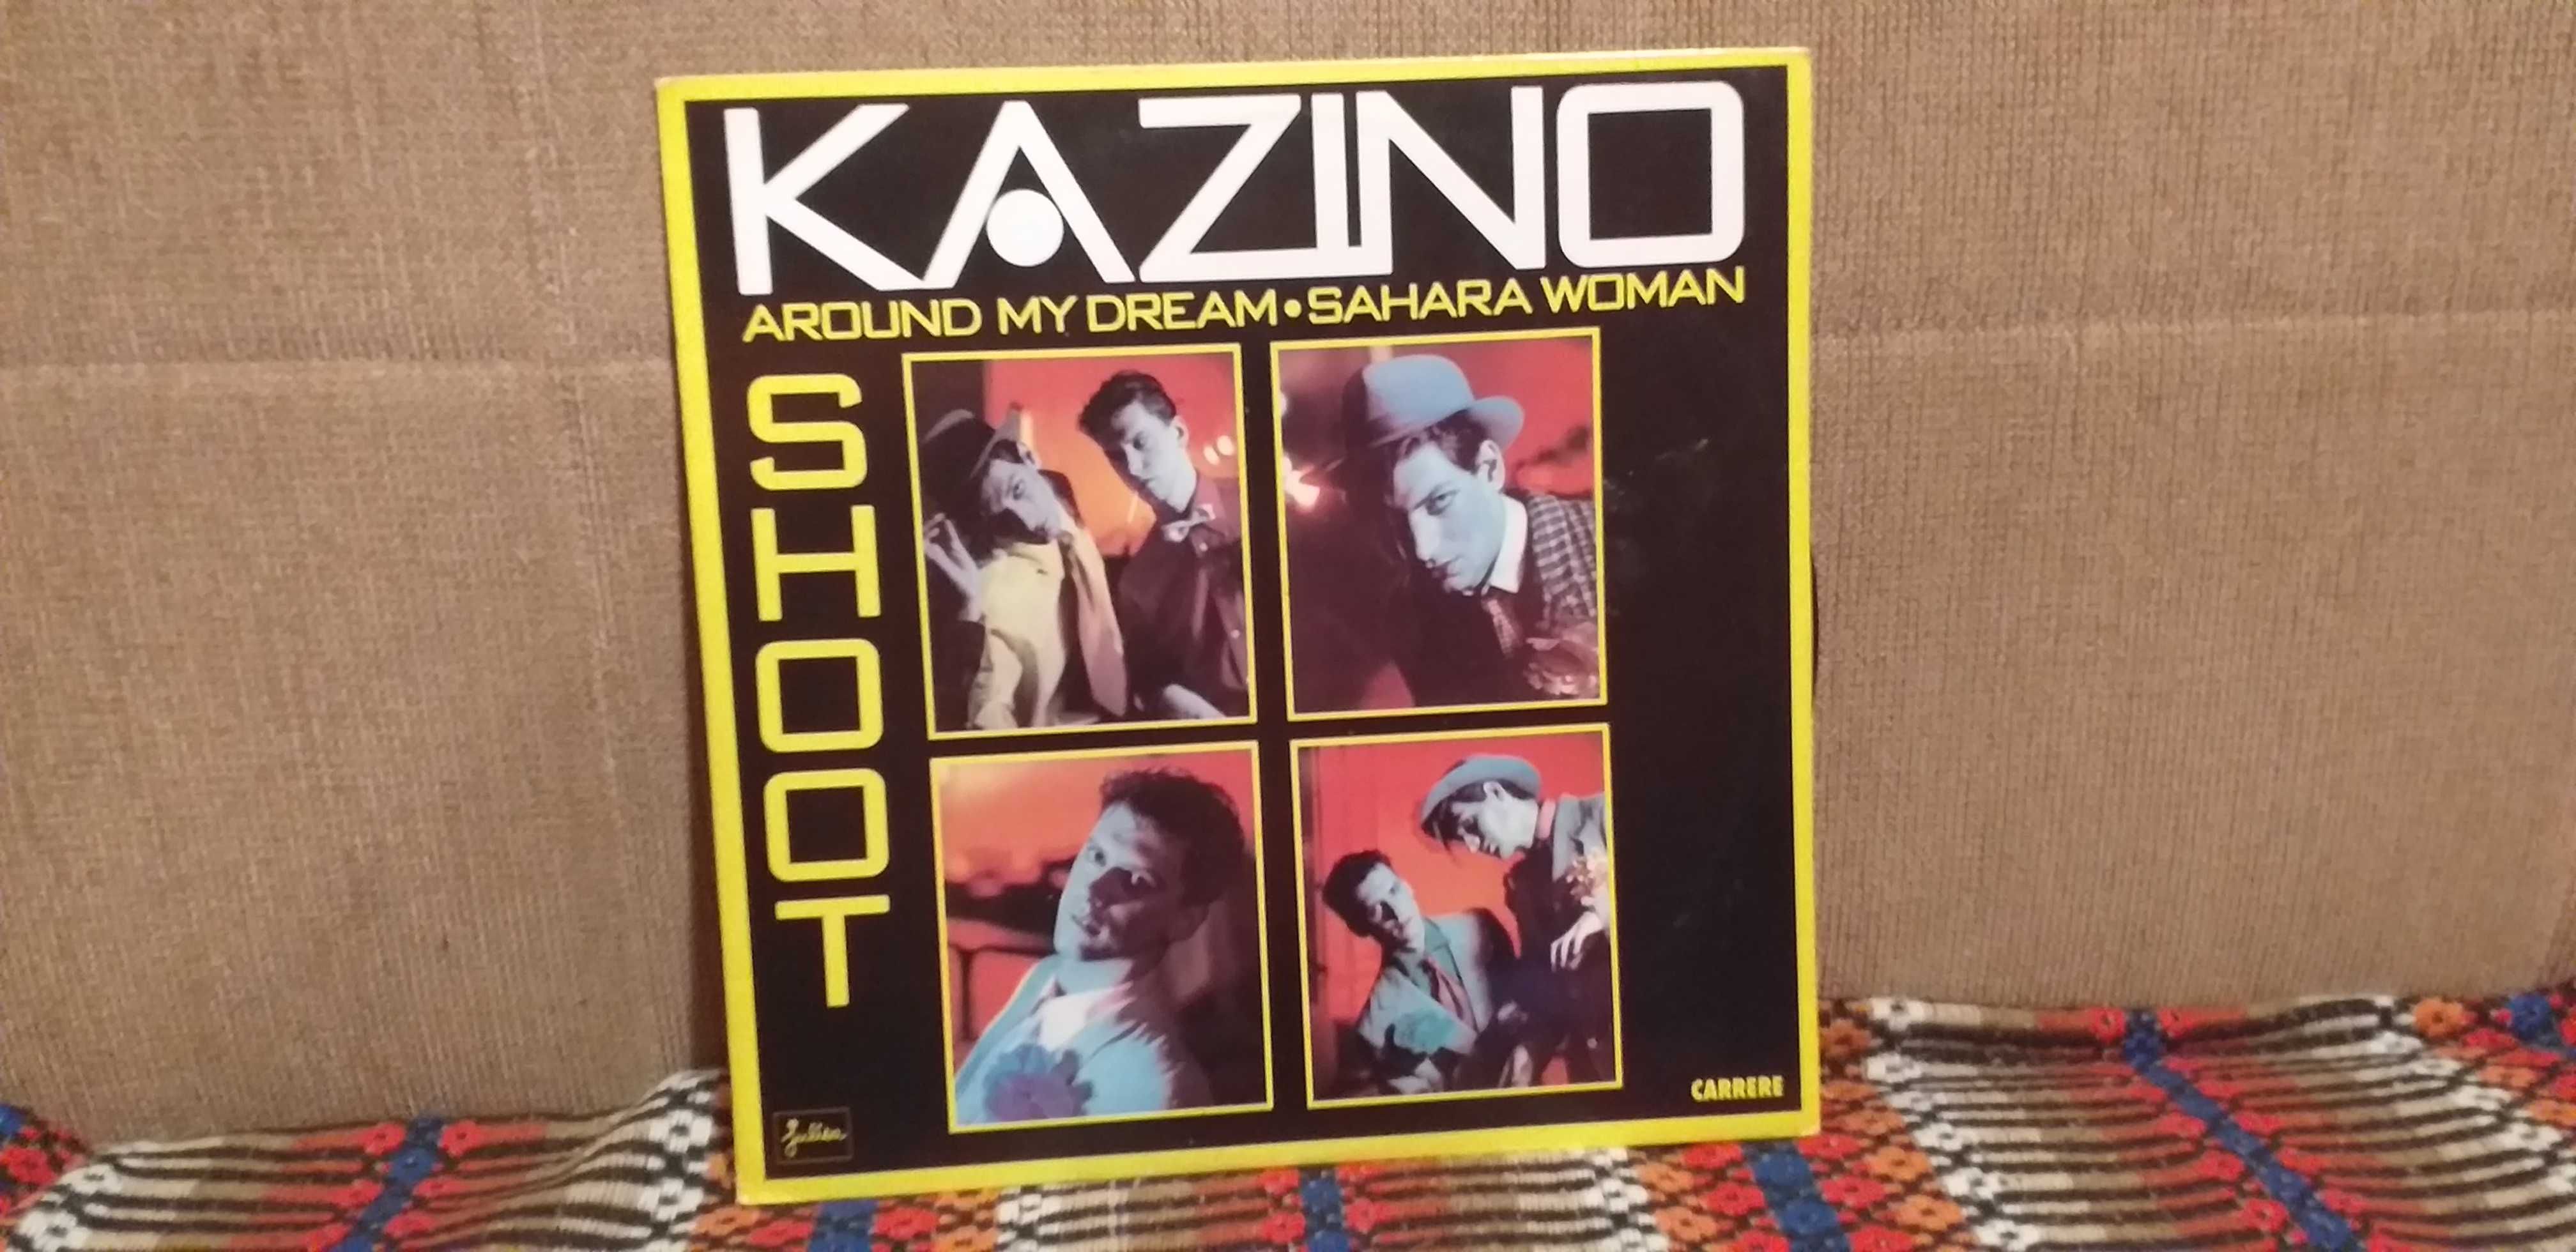 Kazino - Shoot - EP Maxi-single - portes incluidos